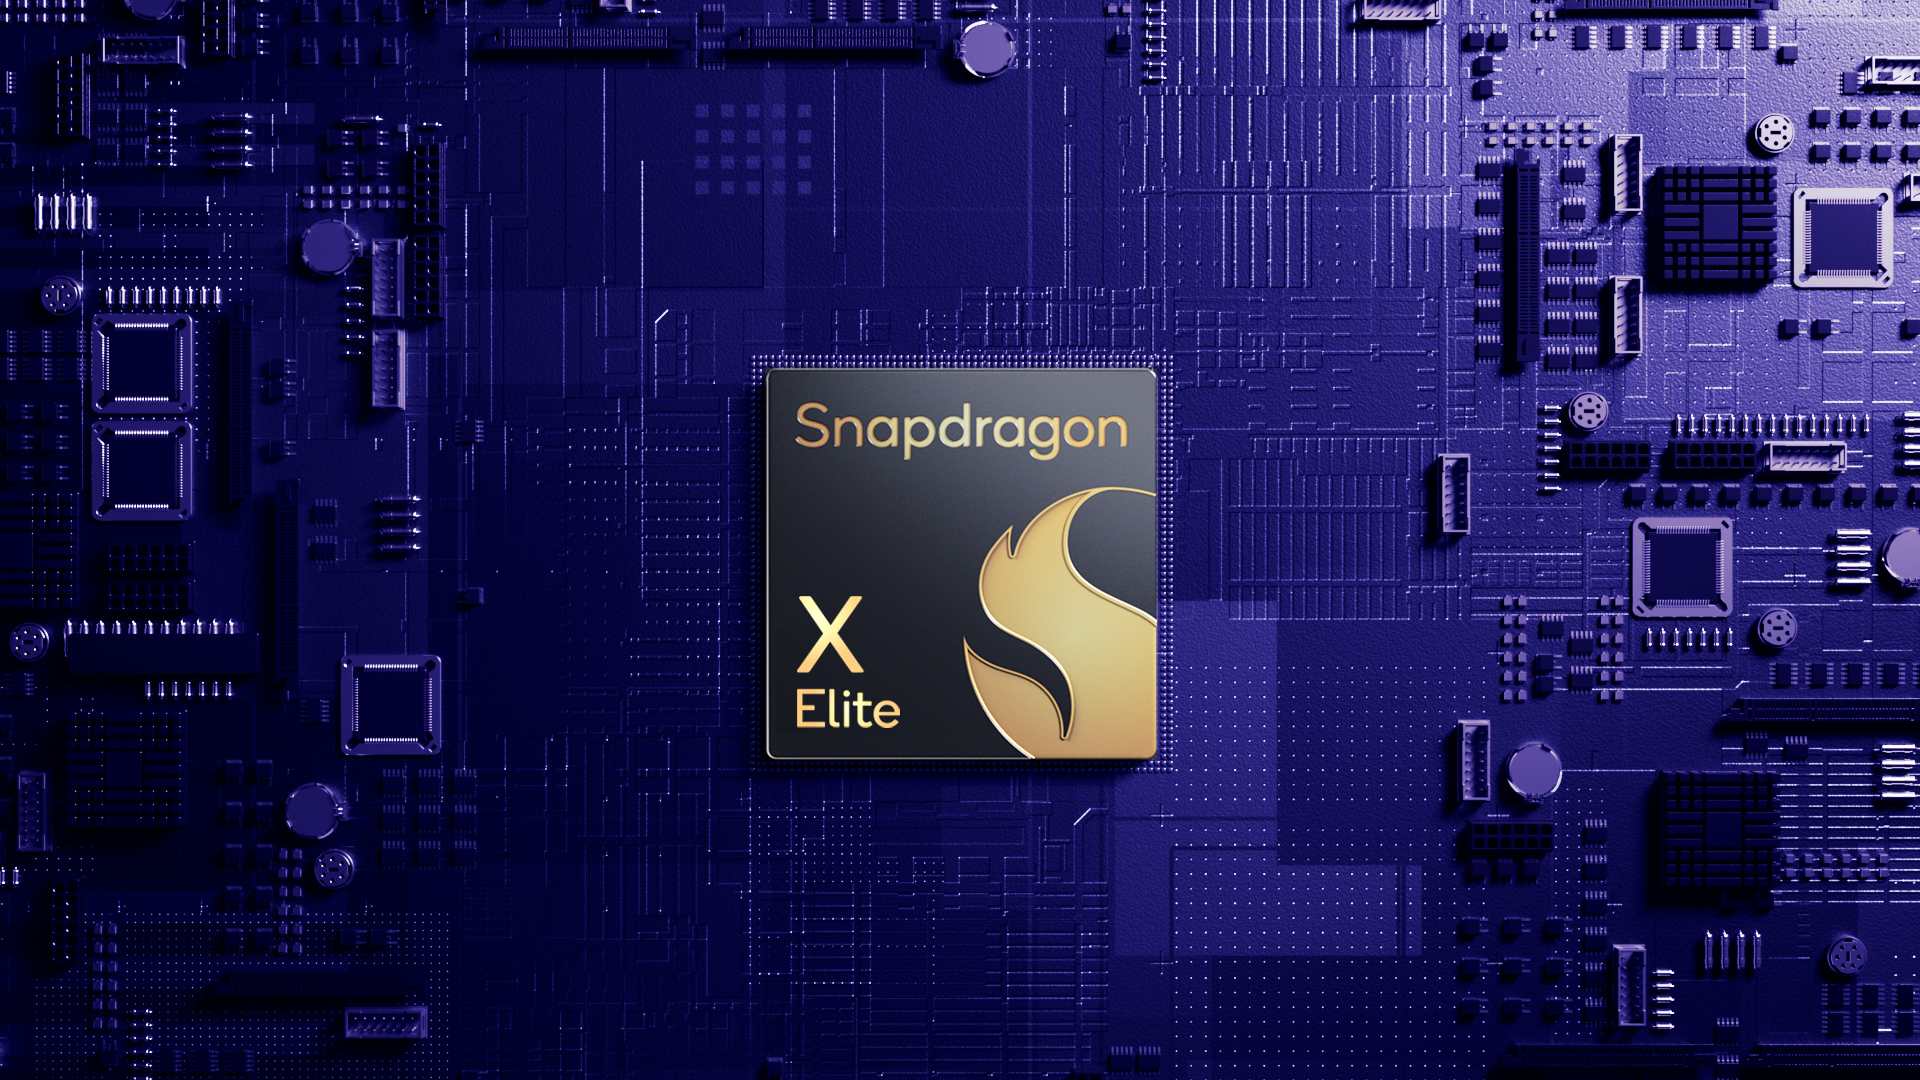 Qualcomm Snapdragon X1 Elite